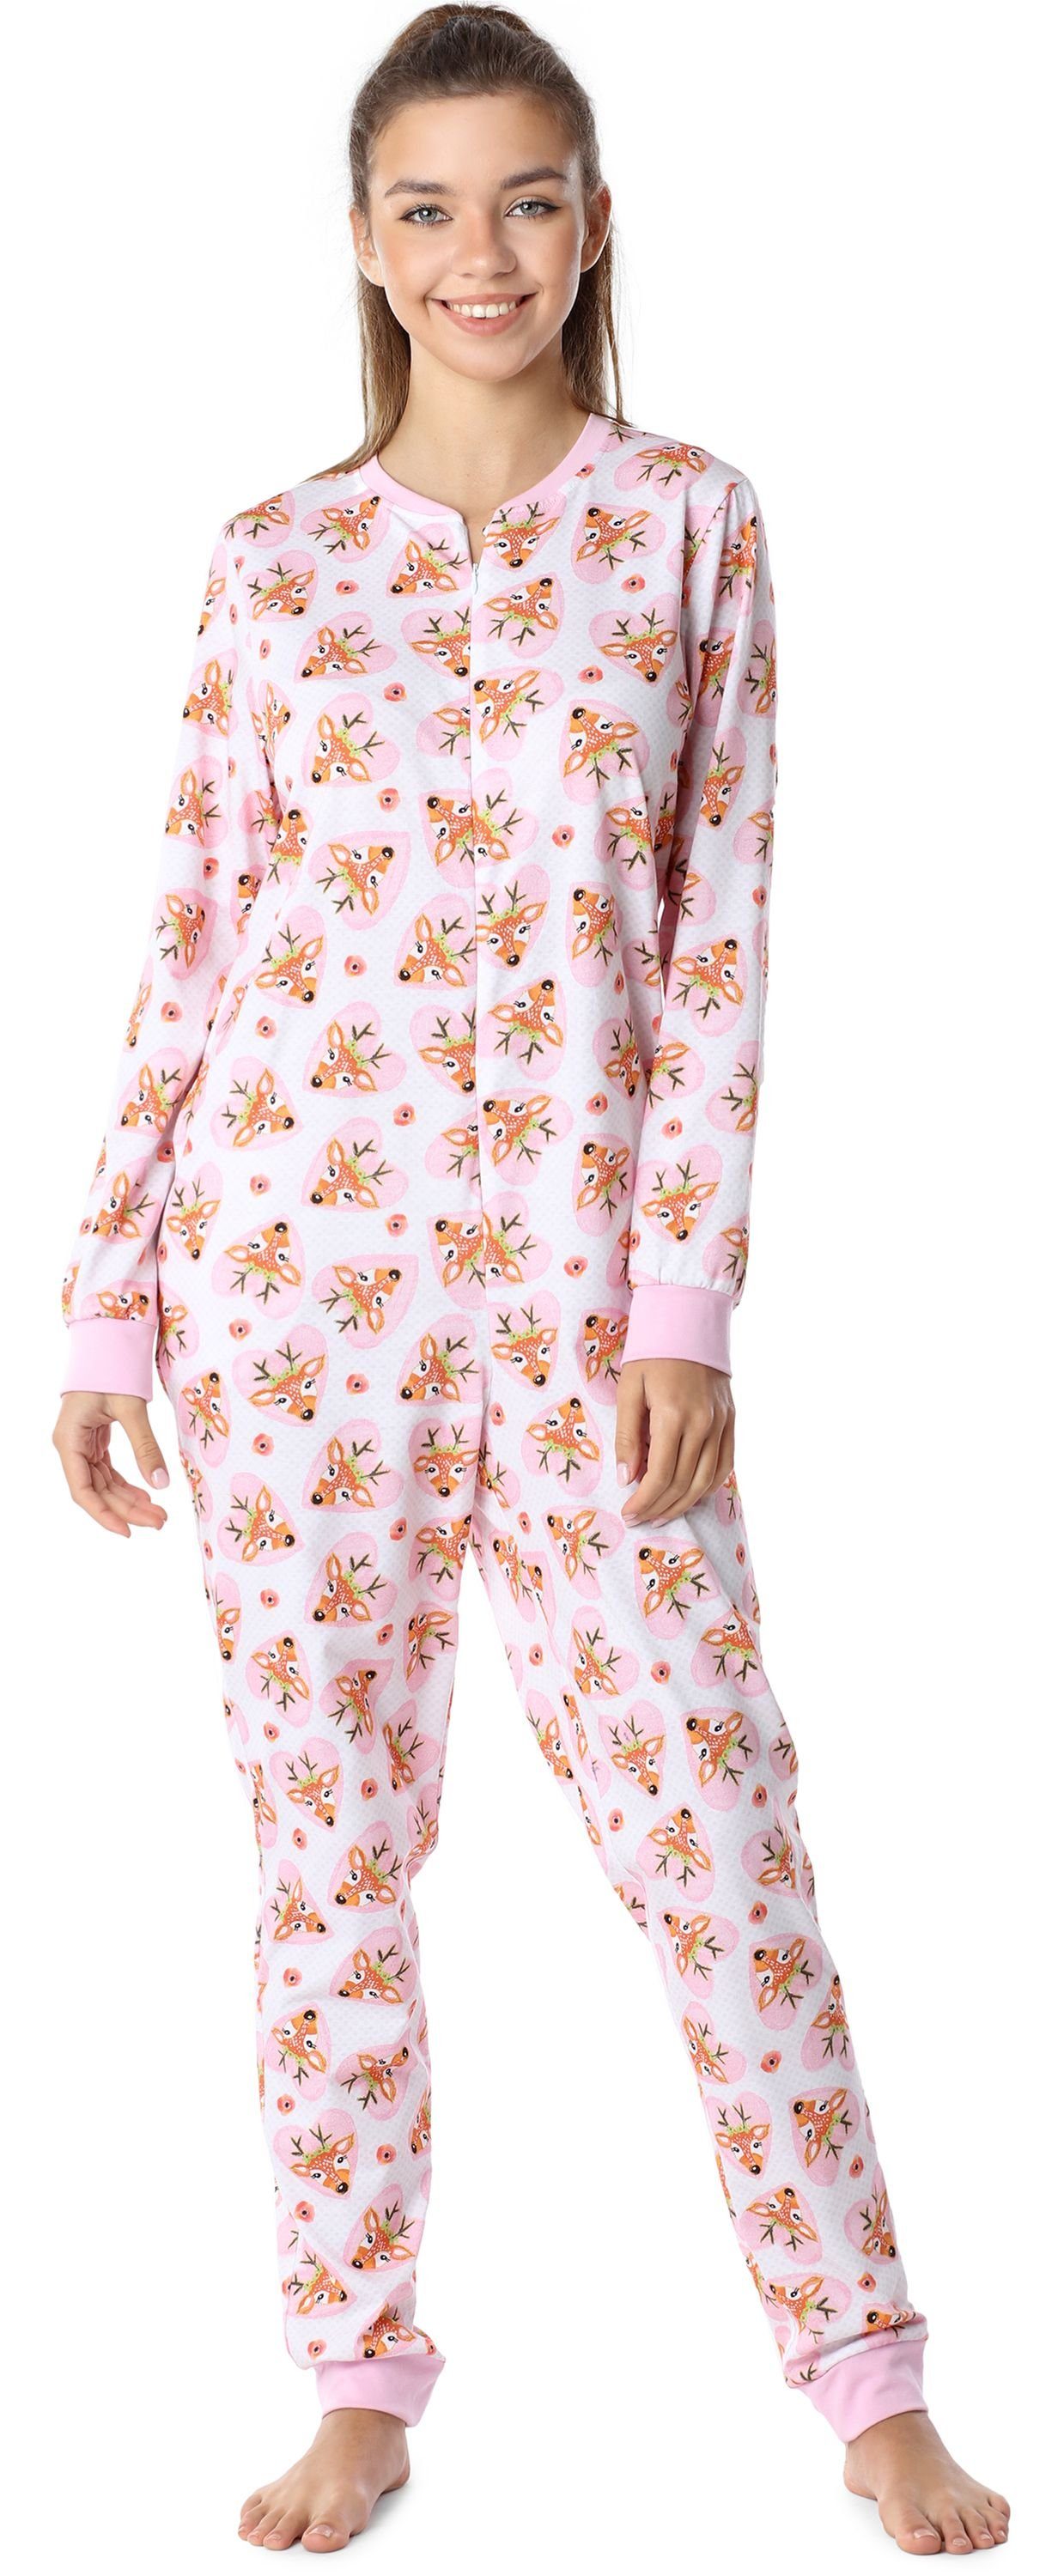 Hirsche Rosa/Herzen Schlafanzug Jugend Mädchen MS10-235 Merry Schlafanzug Style Schlafoverall